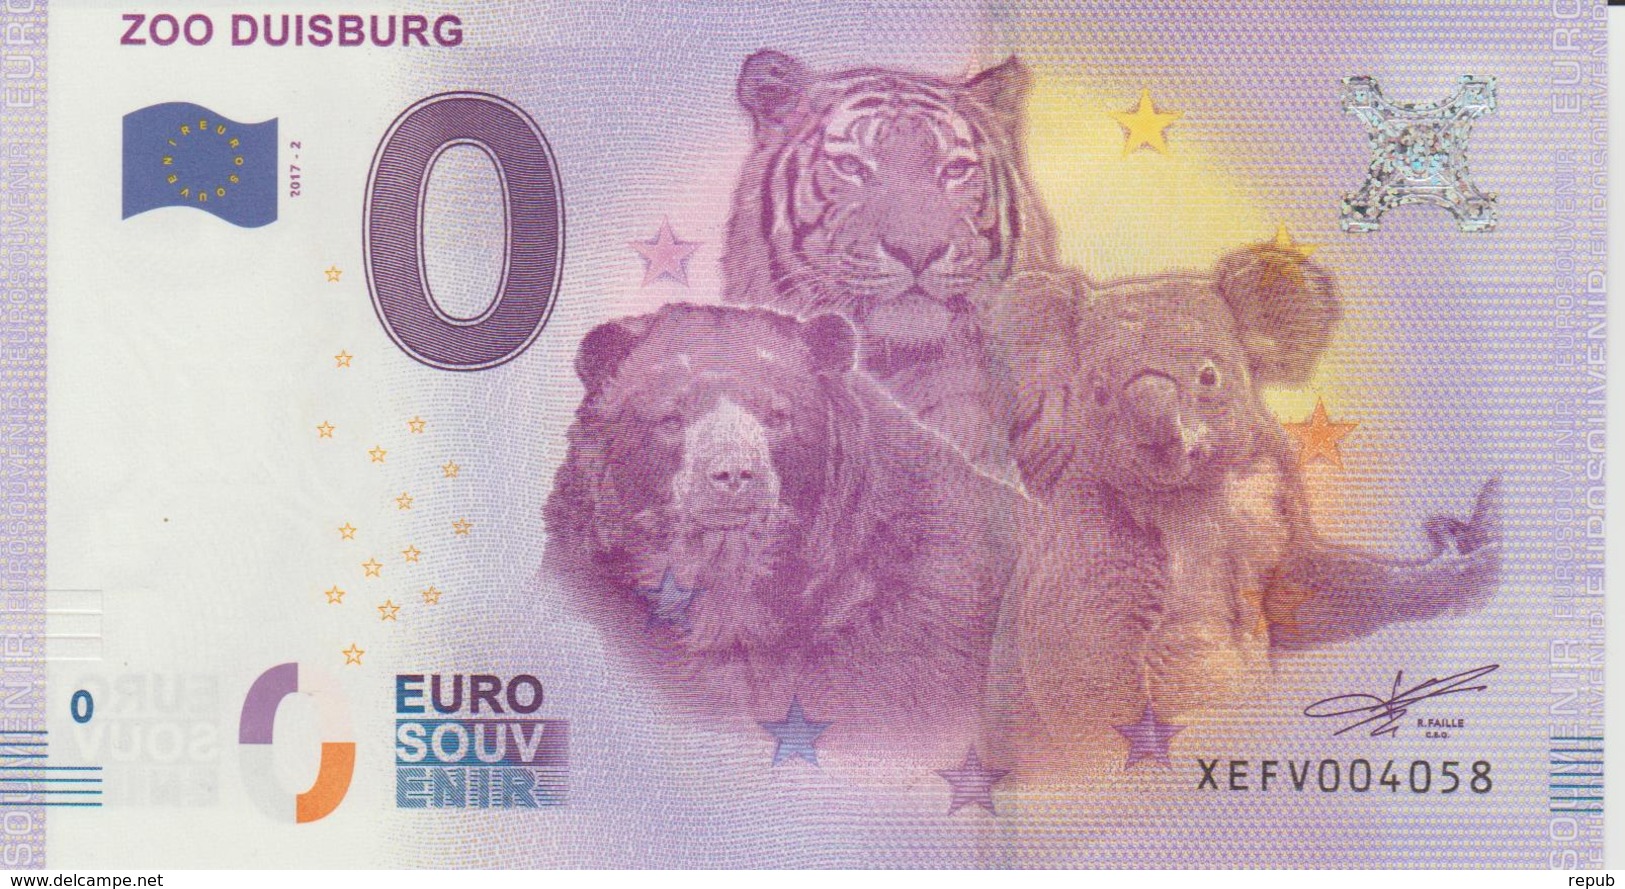 Billet Touristique 0 Euro Souvenir Allemagne Zoo Duisburg 2017-2 N°XEFV004058 - Essais Privés / Non-officiels